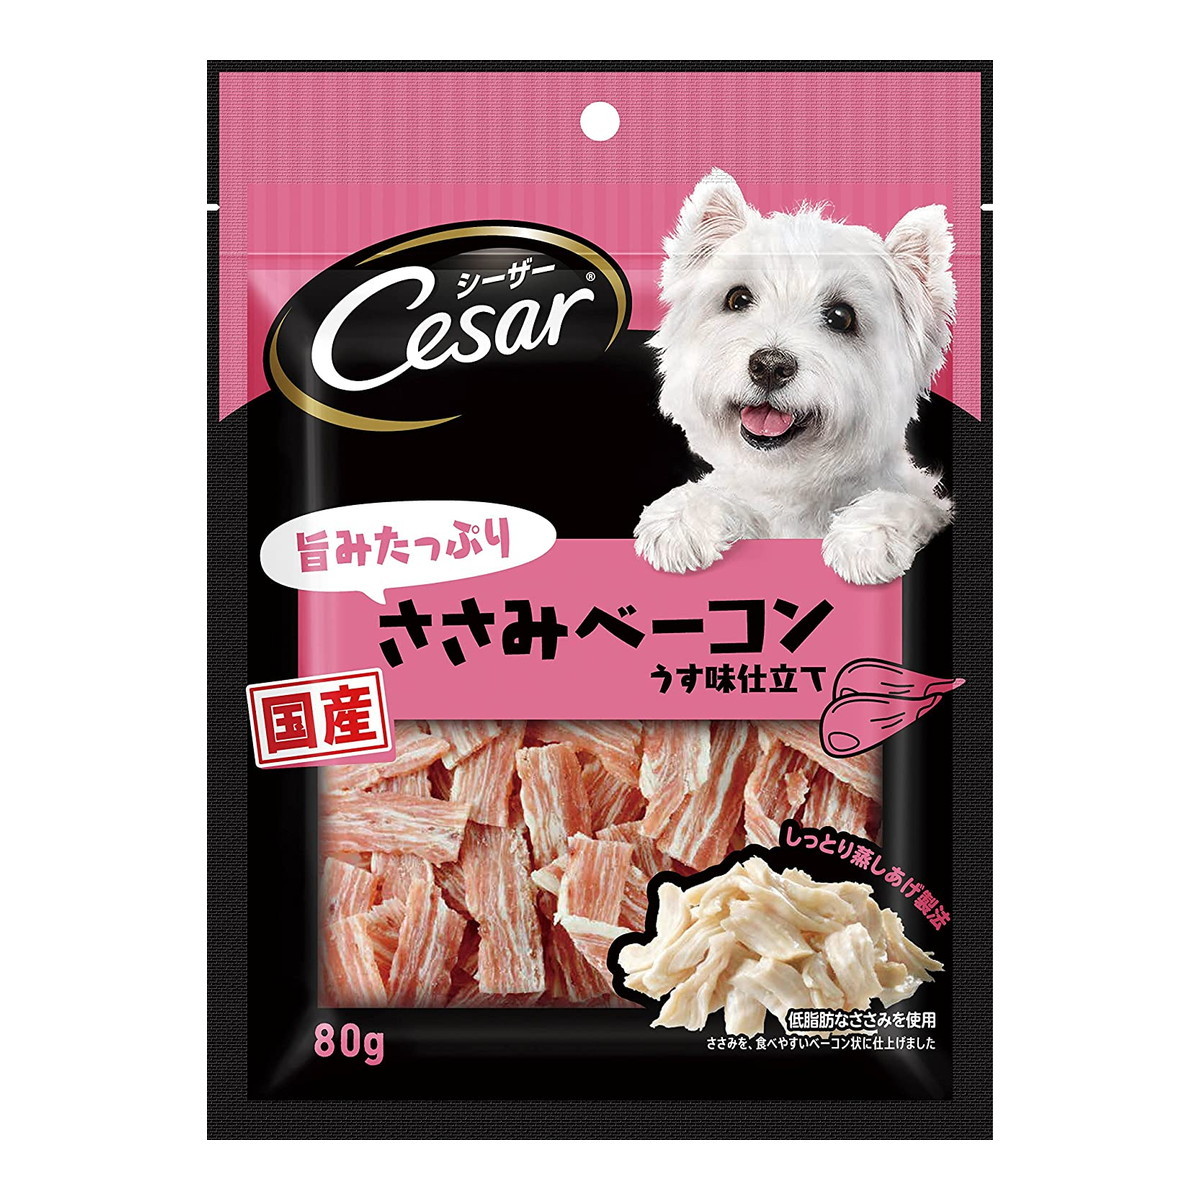 MARS（ペット用品、食品） シーザー 旨みたっぷりささみベーコン 80g×3個 シーザー 犬用おやつ、ガムの商品画像